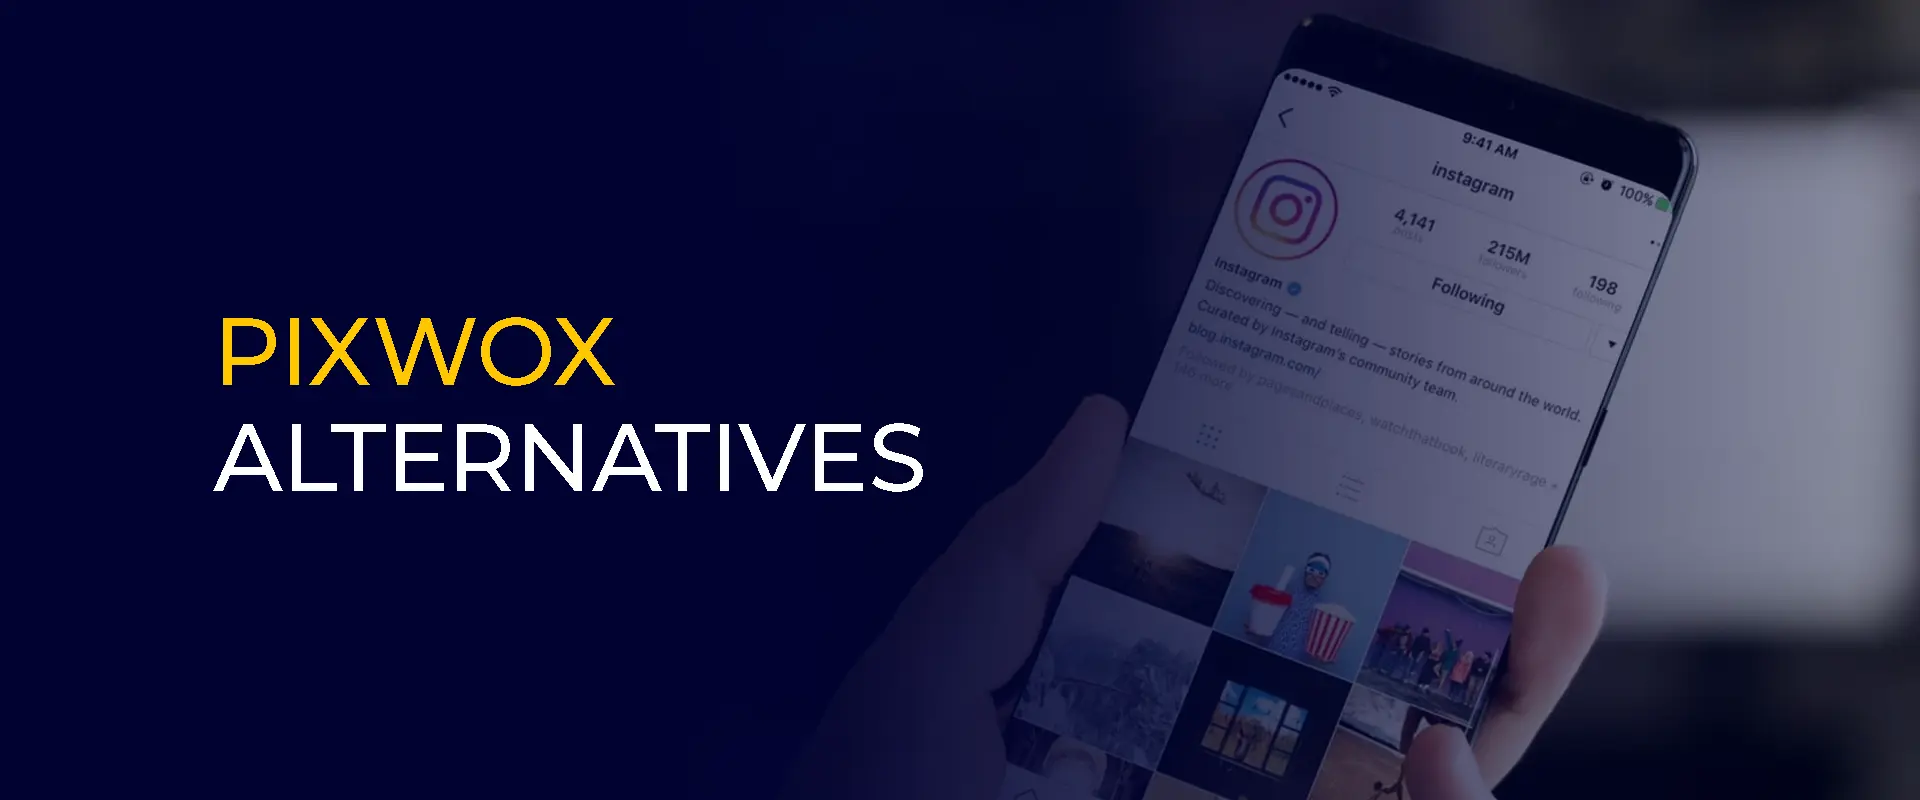 Pixwox-alternatieven